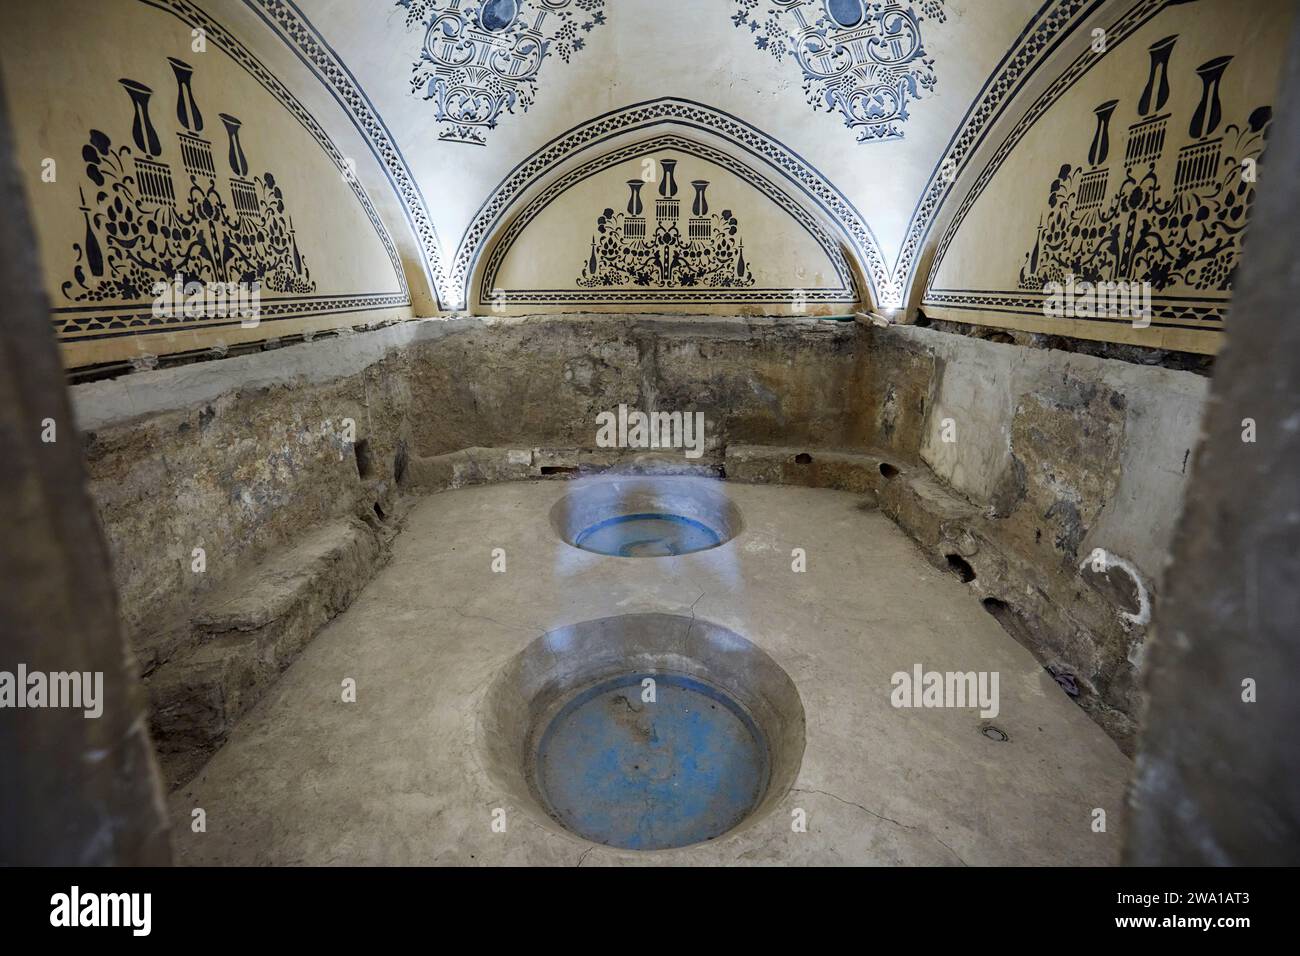 Privates Bad im Sultan Amir Ahmad Bathhouse, auch bekannt als Qasemi Bathhouse, traditionelles iranisches öffentliches Badehaus, das heute ein Museum ist. Kaschan, Iran. Stockfoto